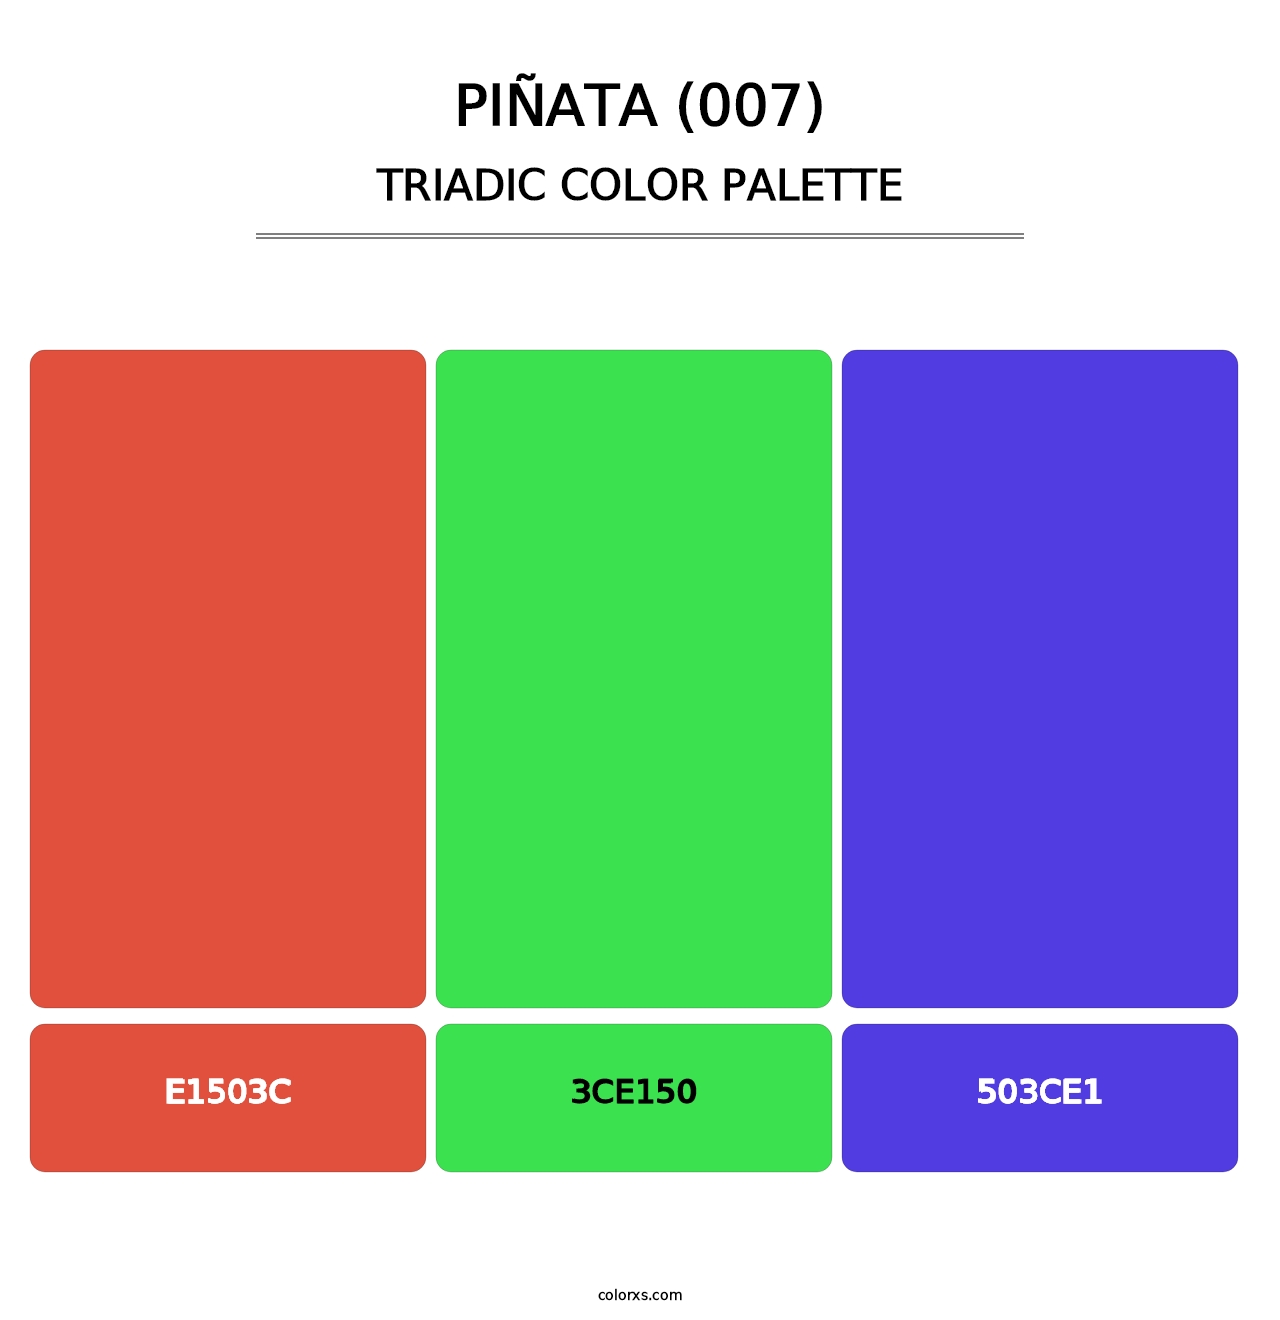 Piñata (007) - Triadic Color Palette